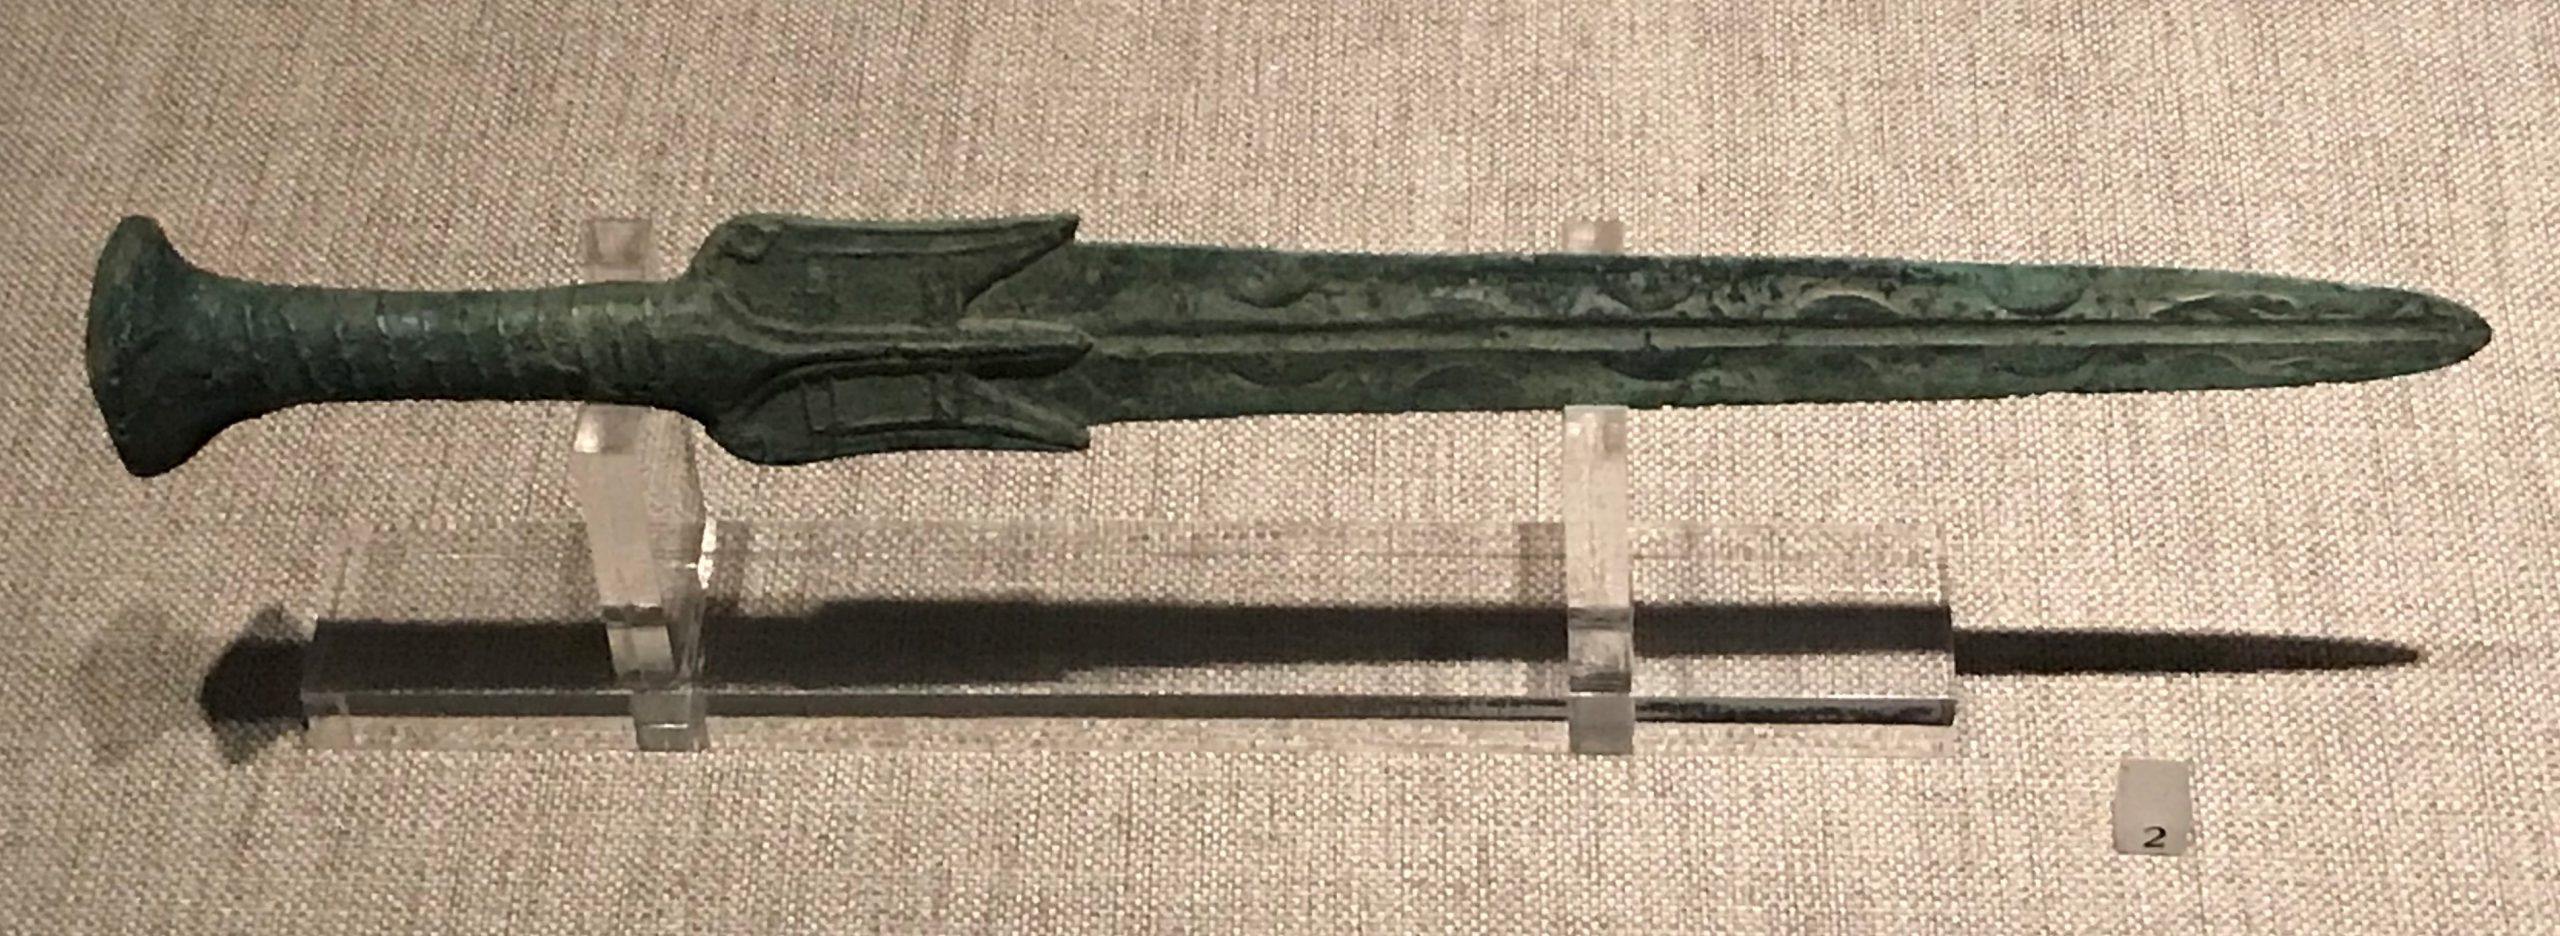 銅矛-銅剣-銅斧-銅鉞-銅戈-銅盒など-先秦時代-常設展F２-成都博物館